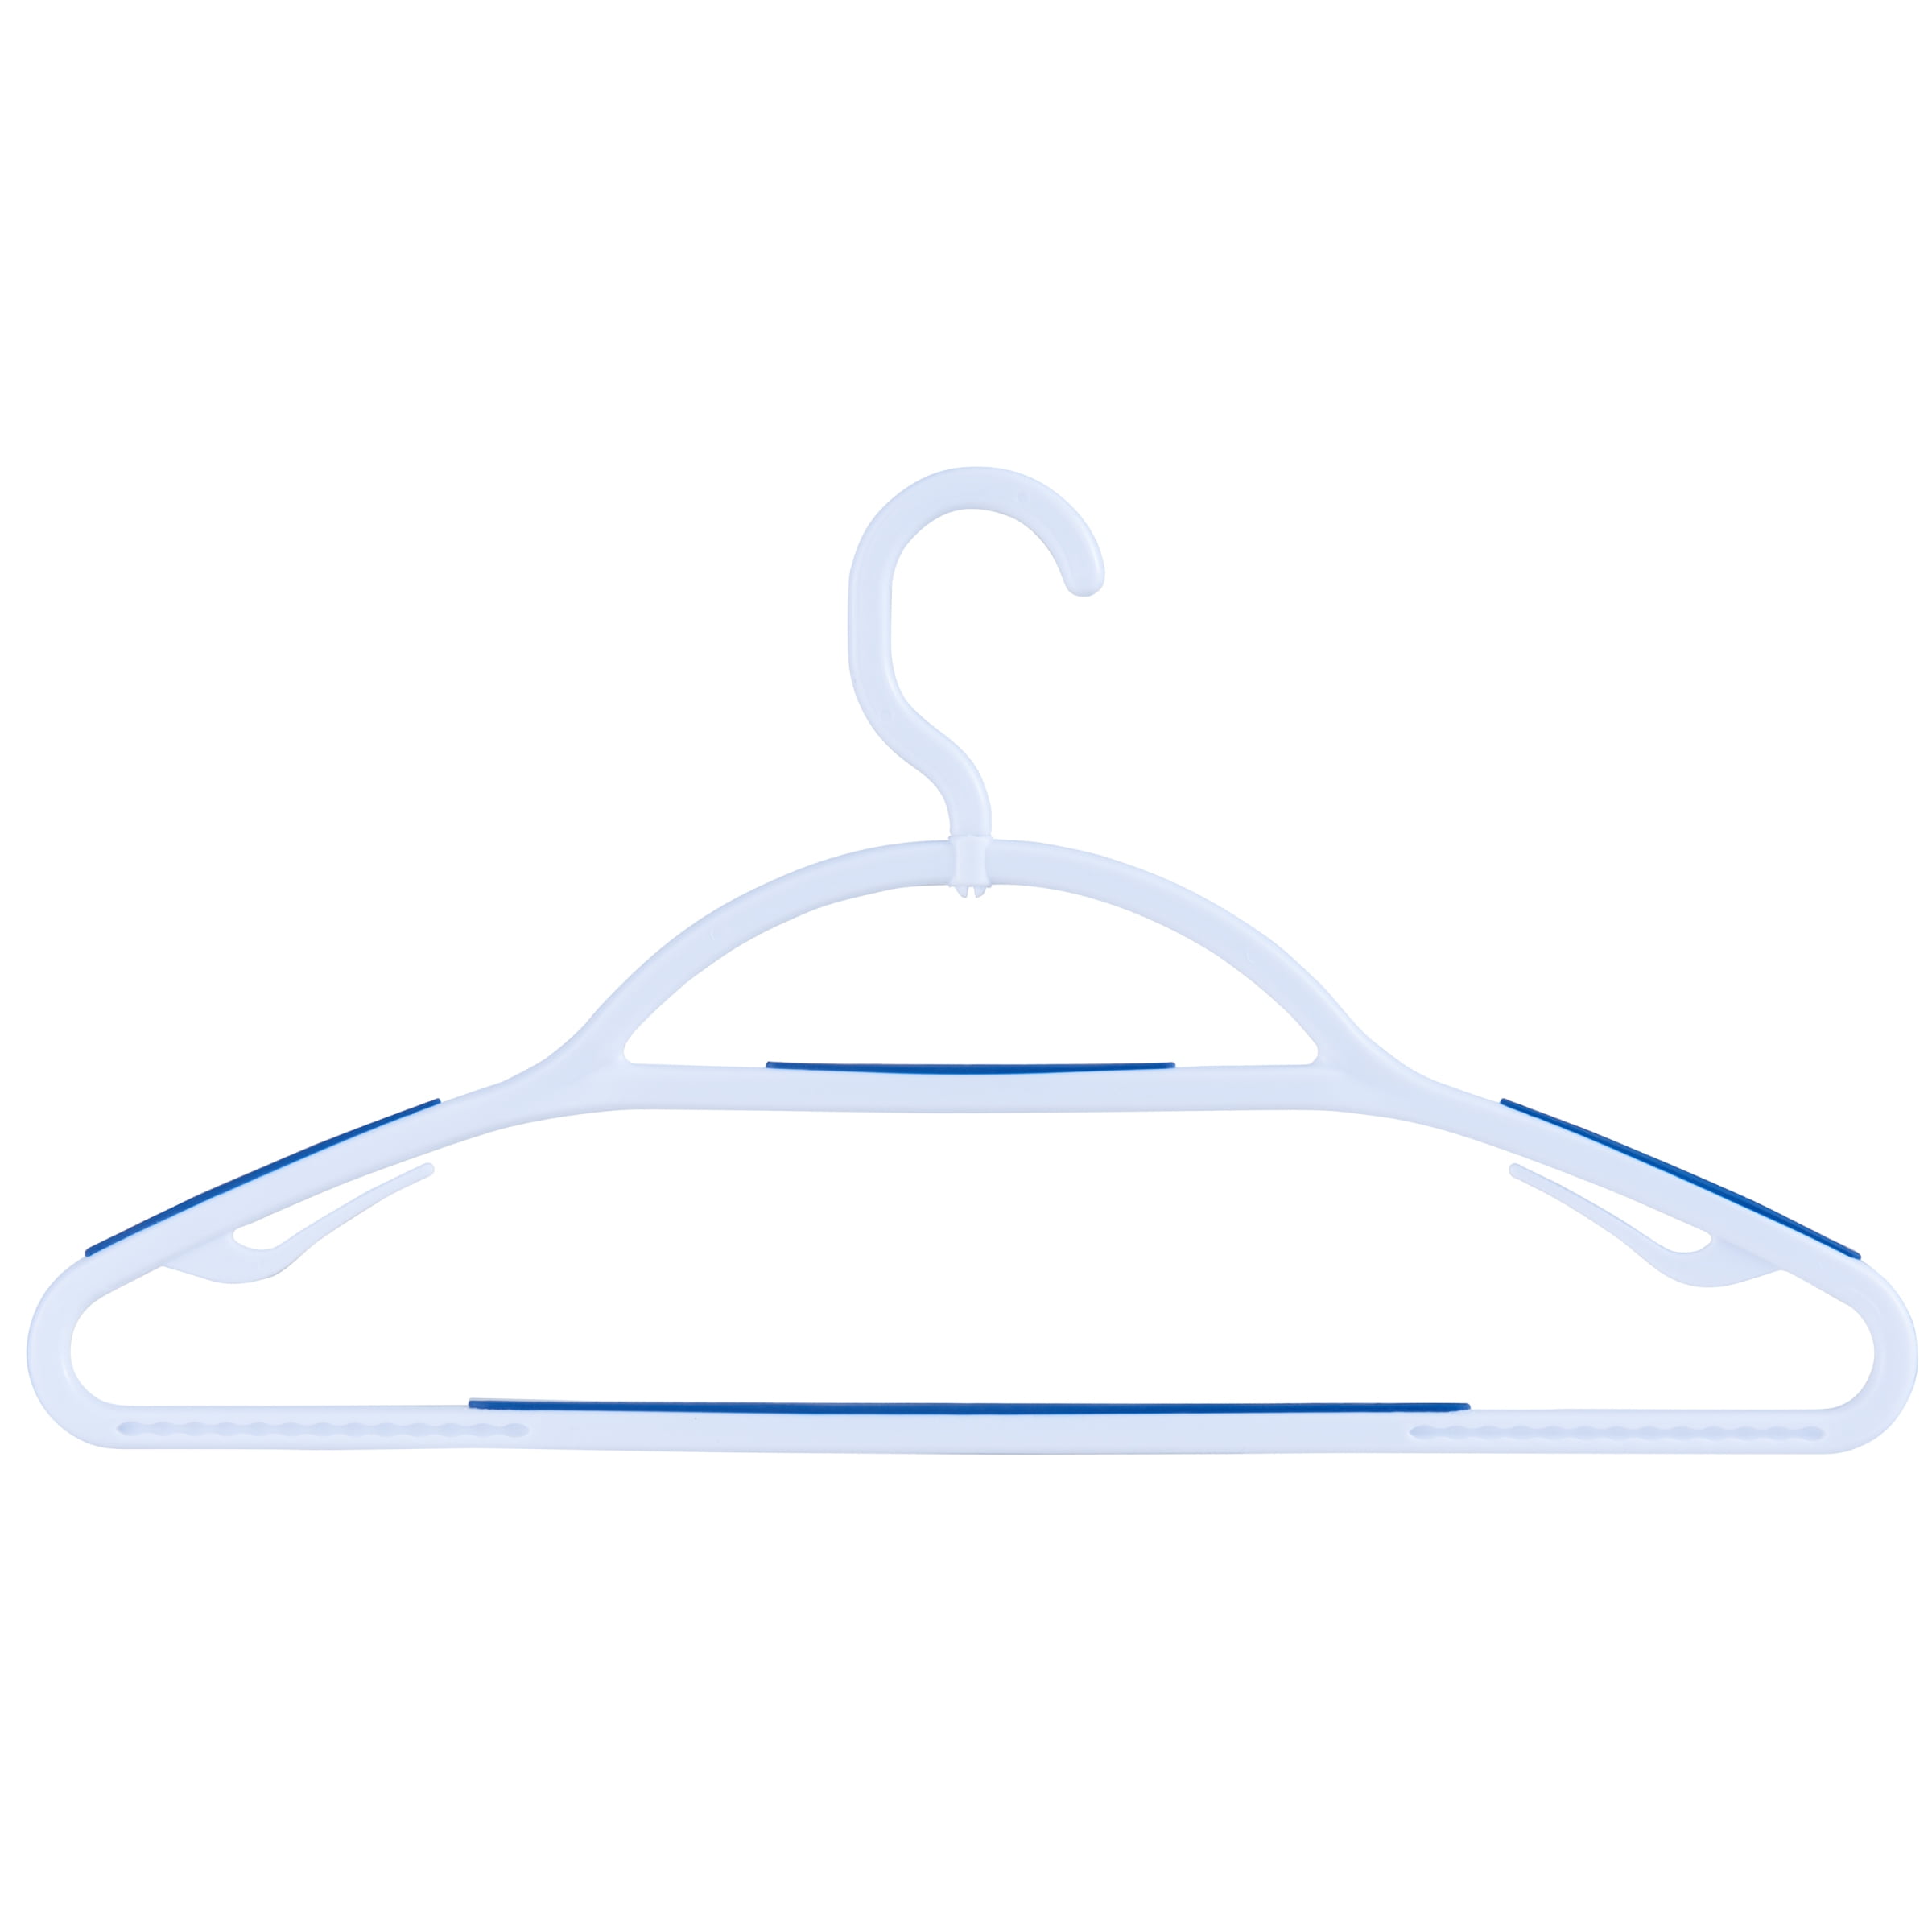 Mainstays Non-Slip Clothing Hangers, 5 Pack, Swivel Neck, White & Blue, Durable Plastic